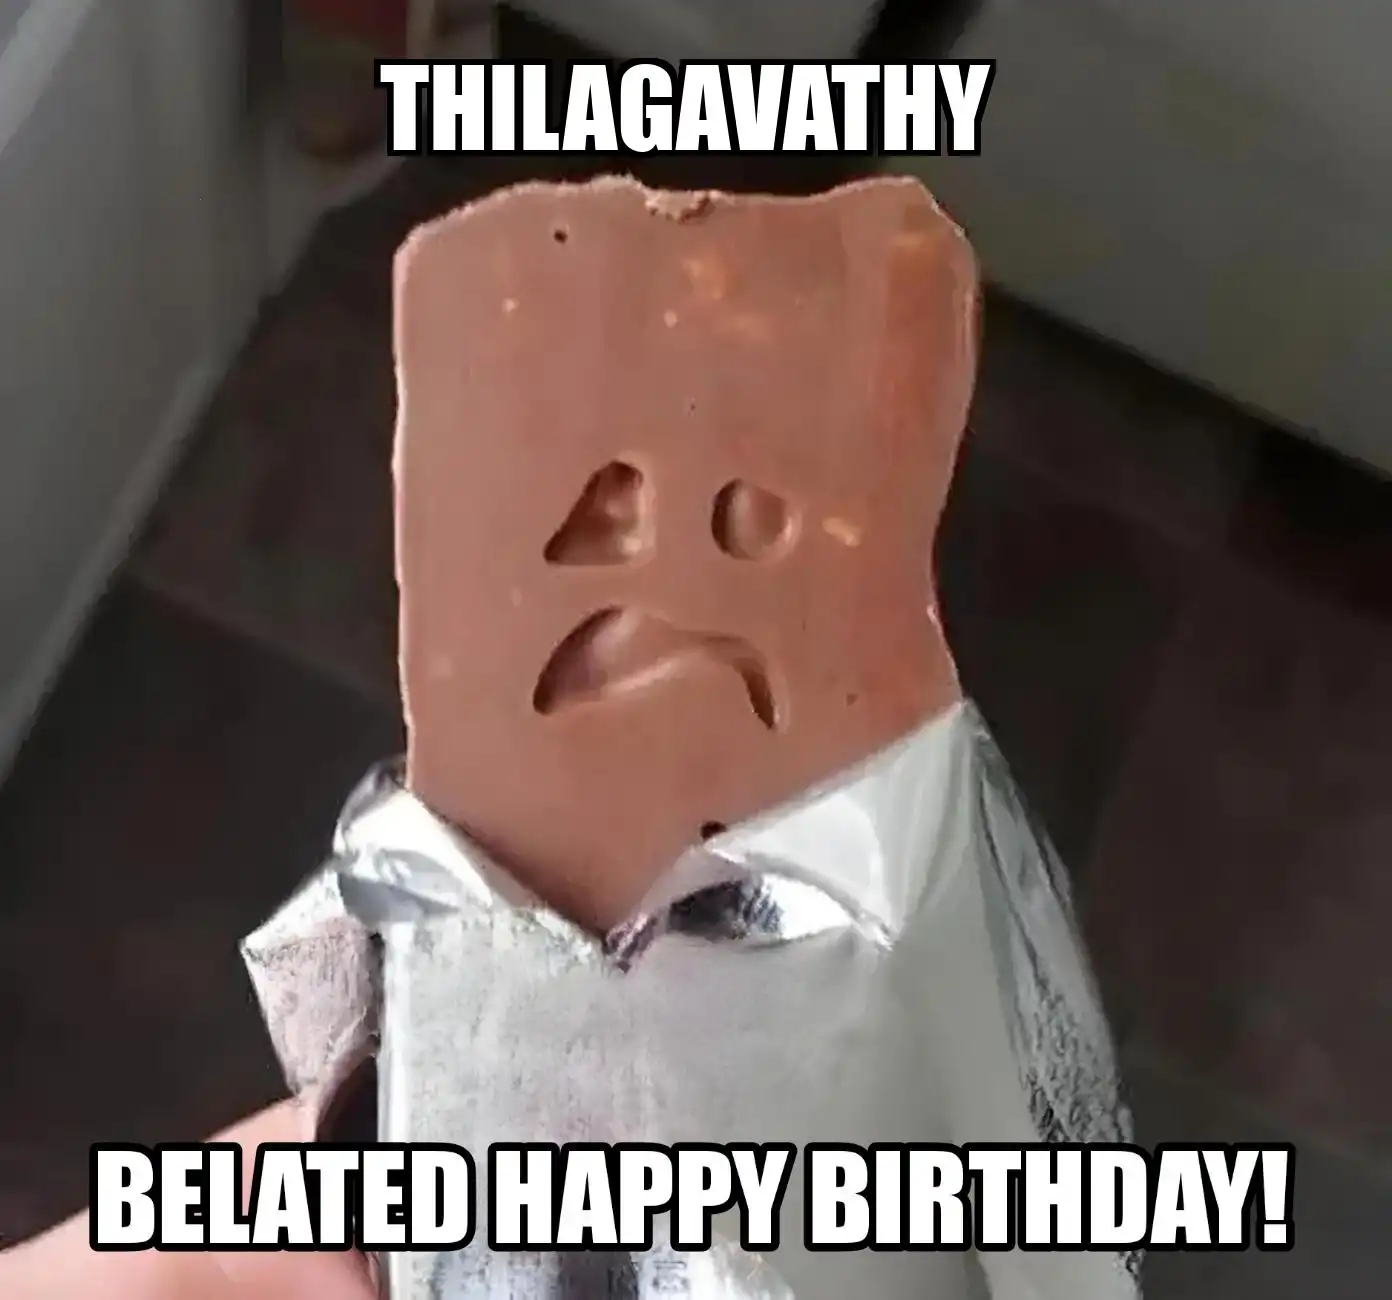 Happy Birthday Thilagavathy Belated Happy Birthday Meme